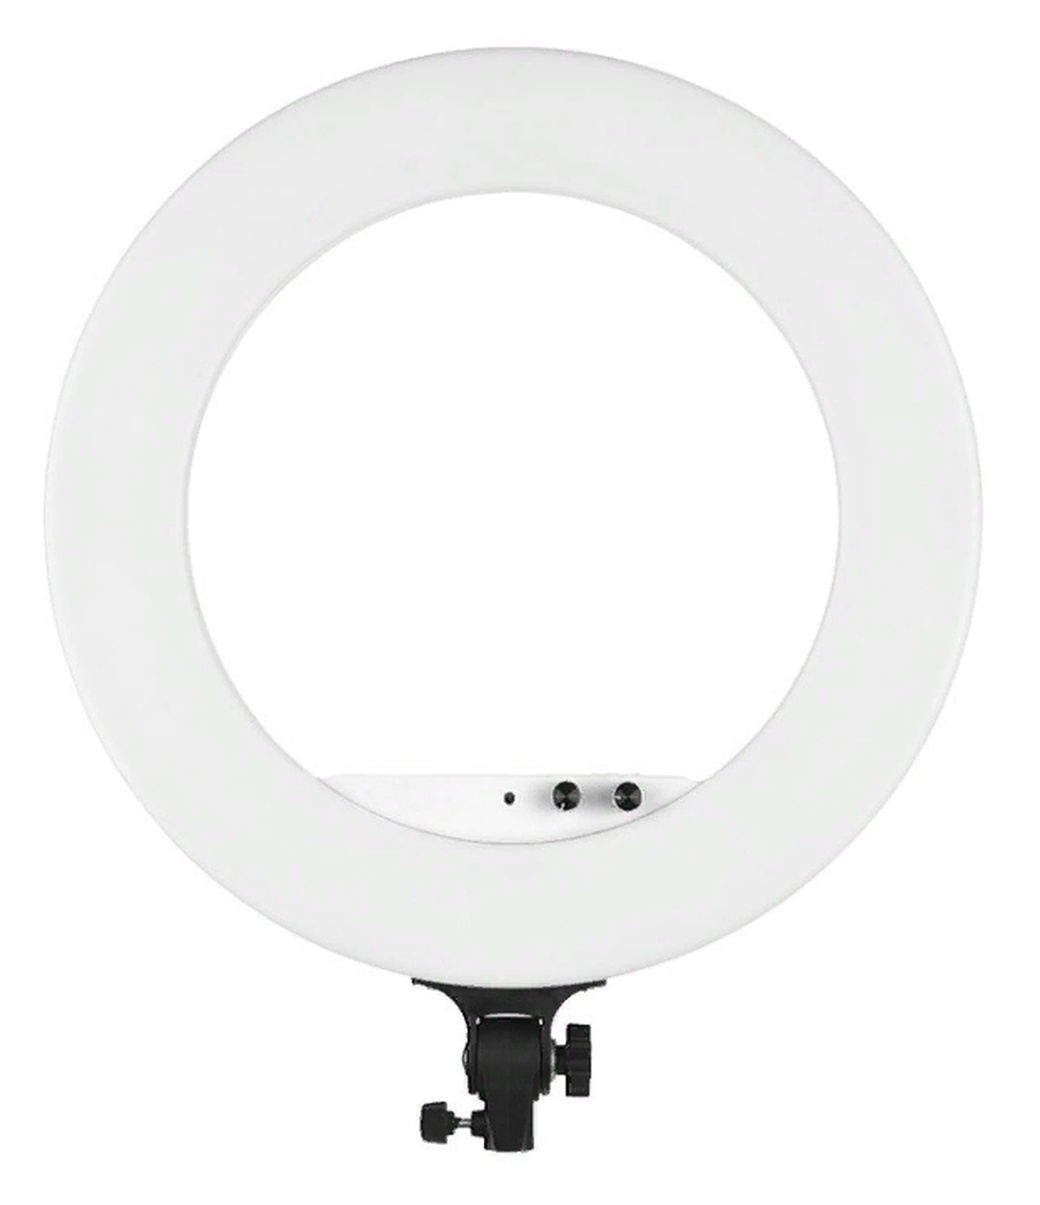 Кольцевая лампа Andoer 18 дюймов с зеркалом, белая фото